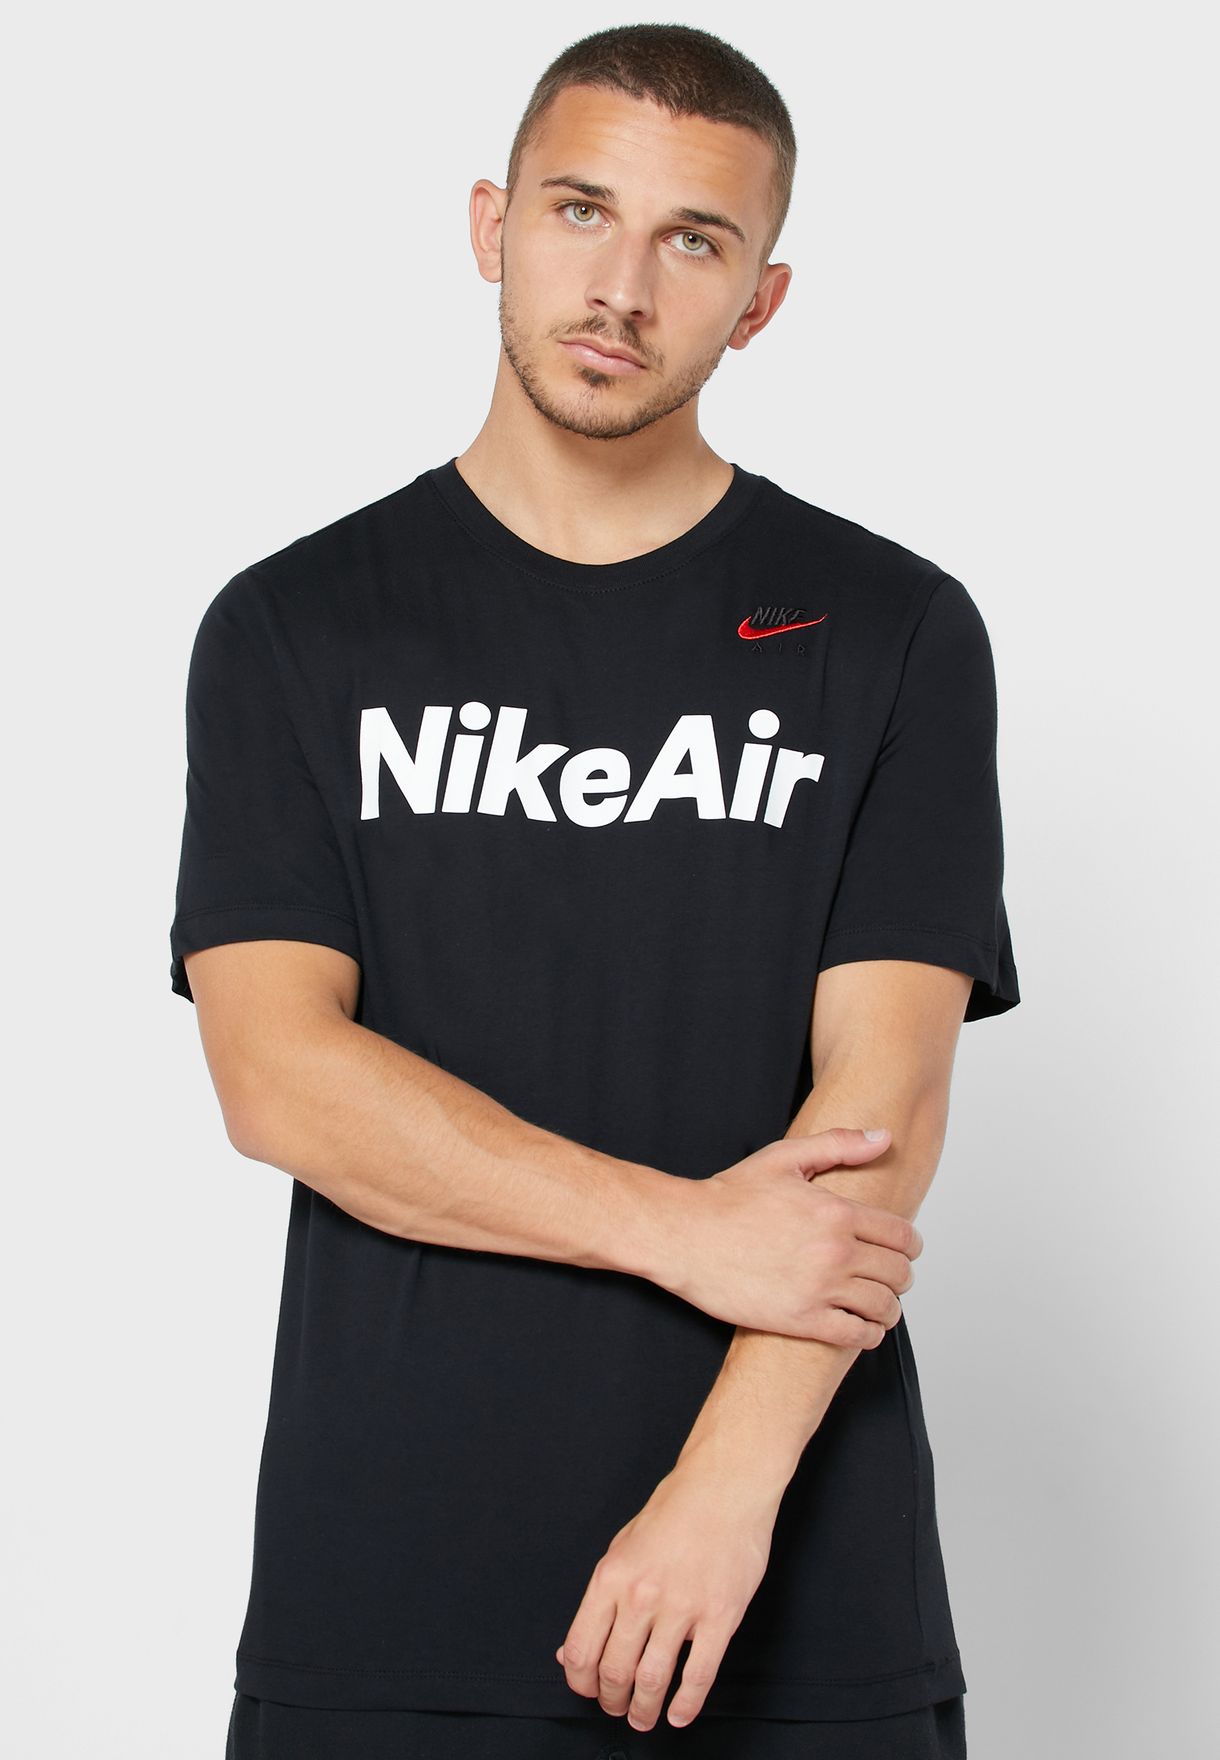 Buy > nike air shirt > in stock